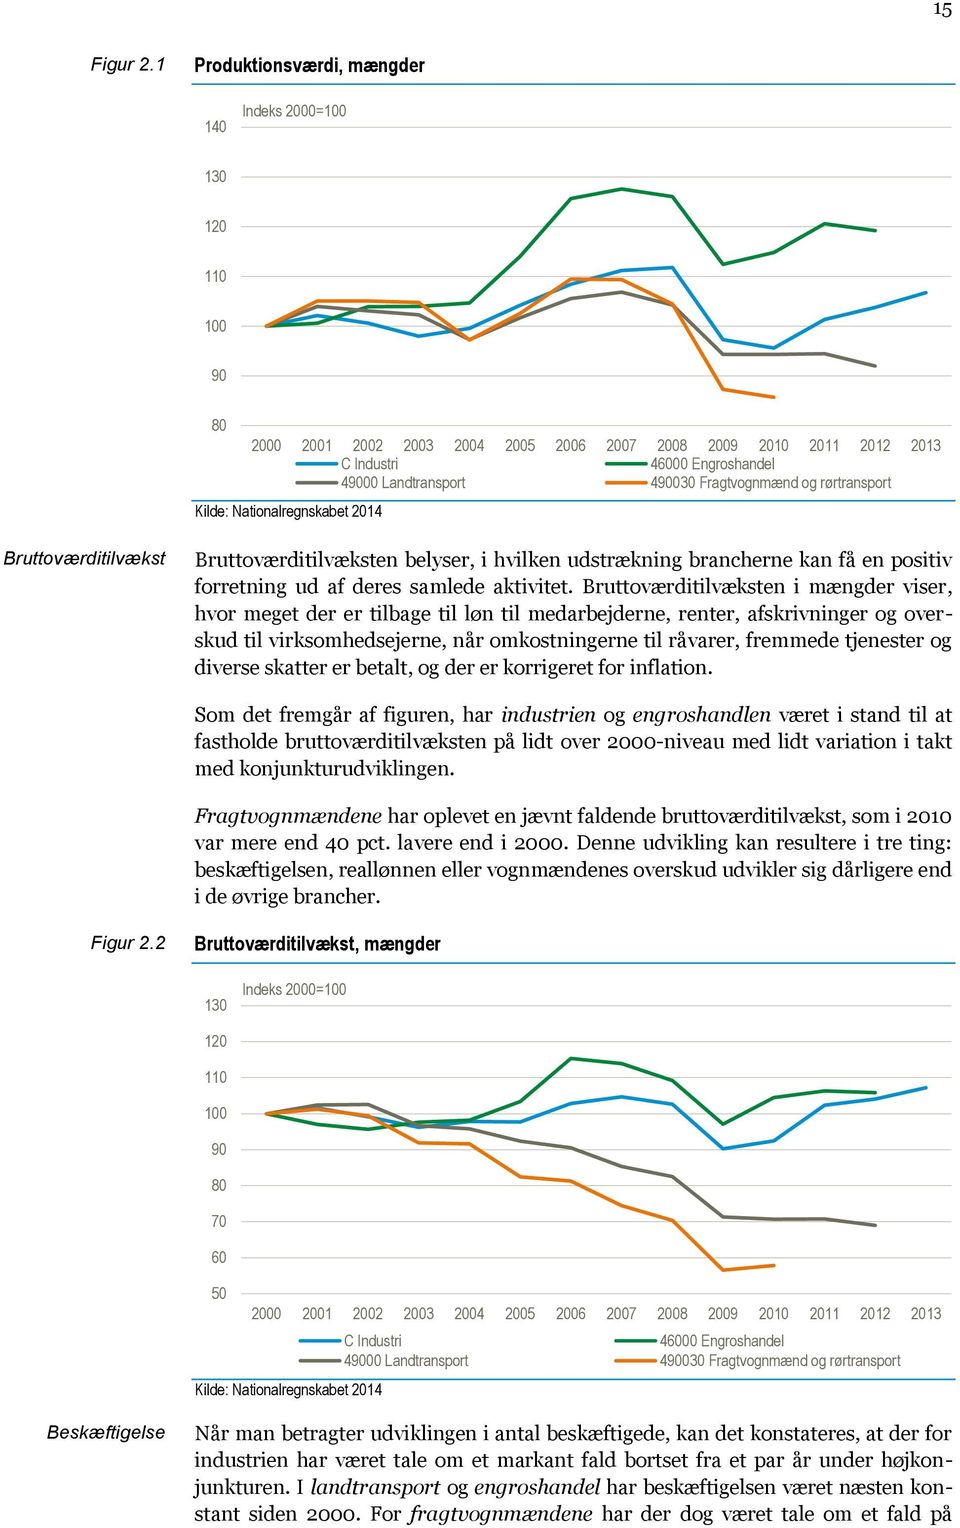 Fragtvognmænd og rørtransport Kilde: Nationalregnskabet 2014 Bruttoværditilvækst Bruttoværditilvæksten belyser, i hvilken udstrækning brancherne kan få en positiv forretning ud af deres samlede